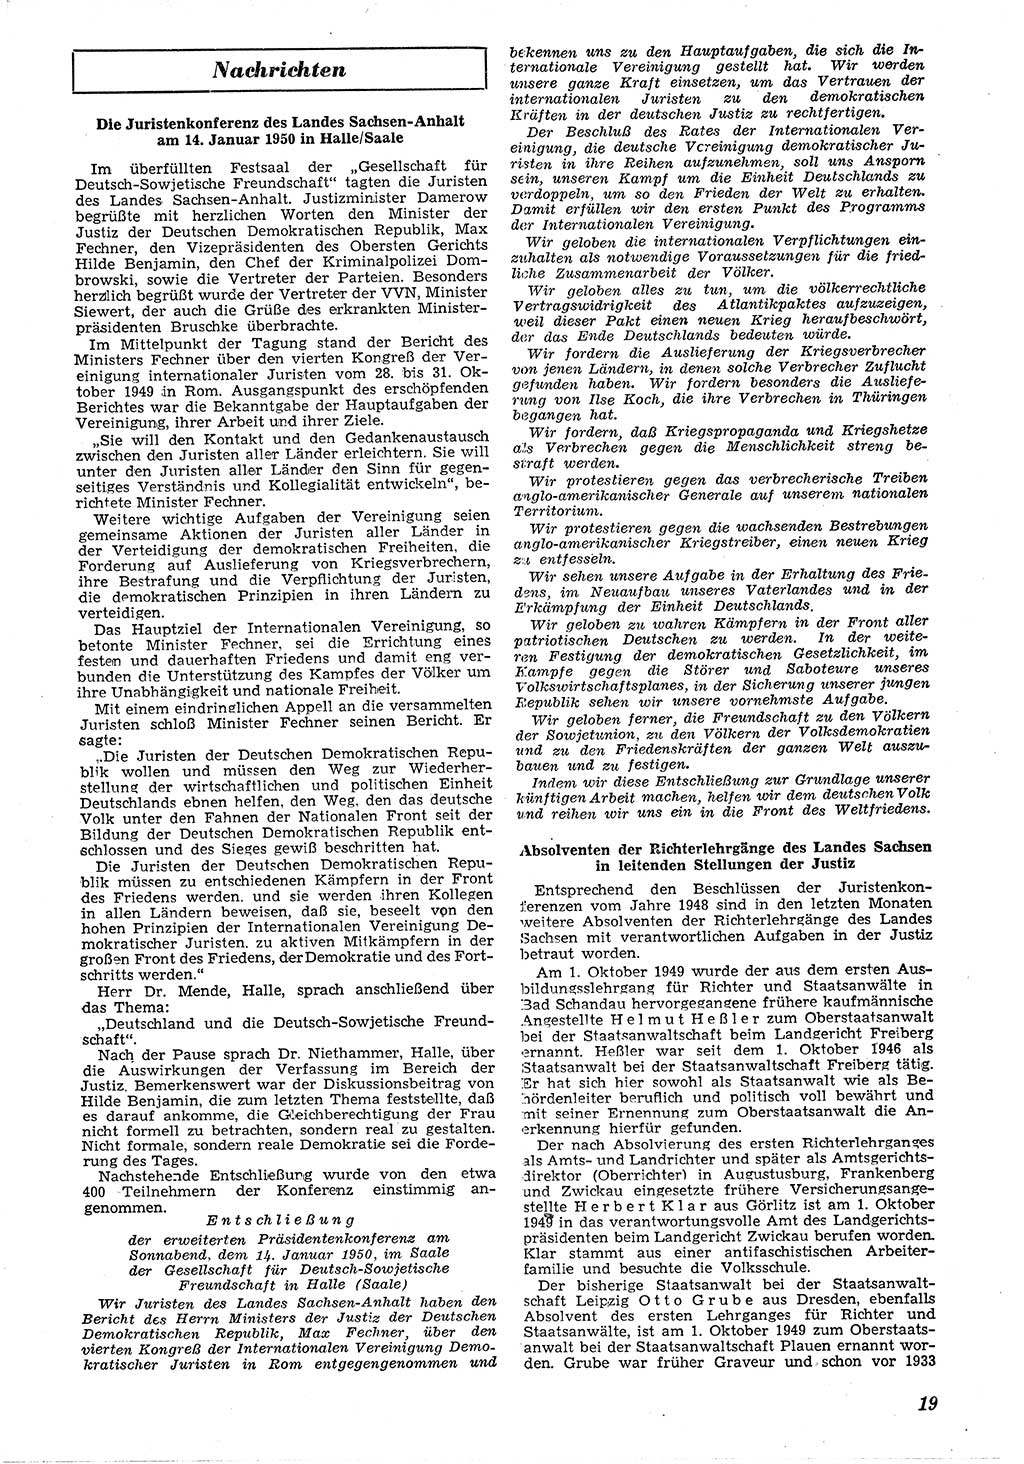 Neue Justiz (NJ), Zeitschrift für Recht und Rechtswissenschaft [Deutsche Demokratische Republik (DDR)], 4. Jahrgang 1950, Seite 19 (NJ DDR 1950, S. 19)